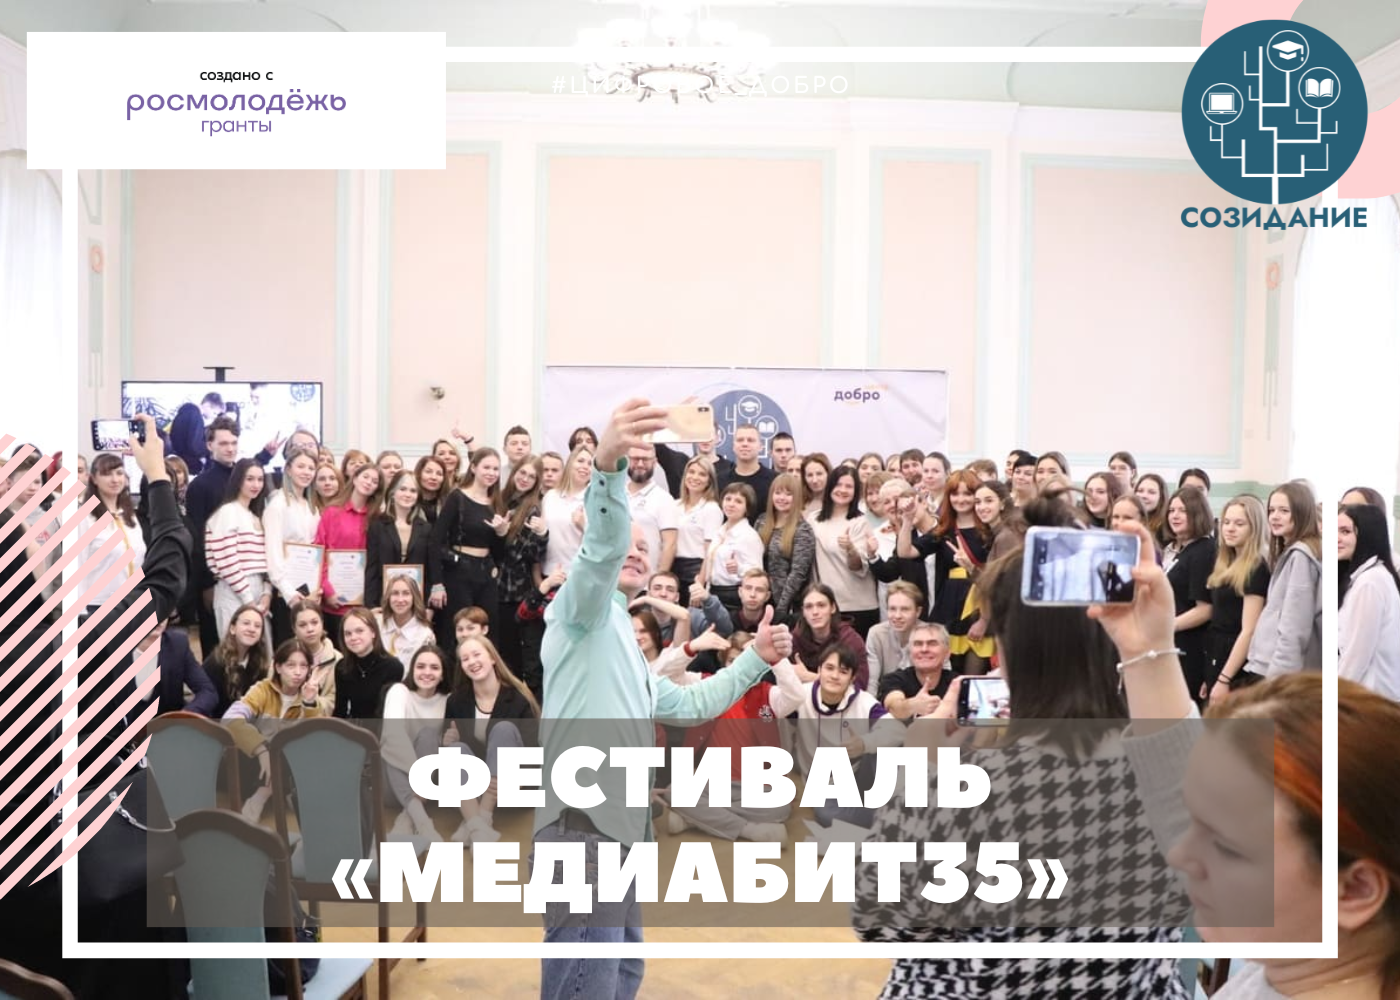 Областной фестиваль по оцифровке культуры и истории Вологодчины для цифровых волонтеров и пенсионеров «МЕДИАБИТ35»